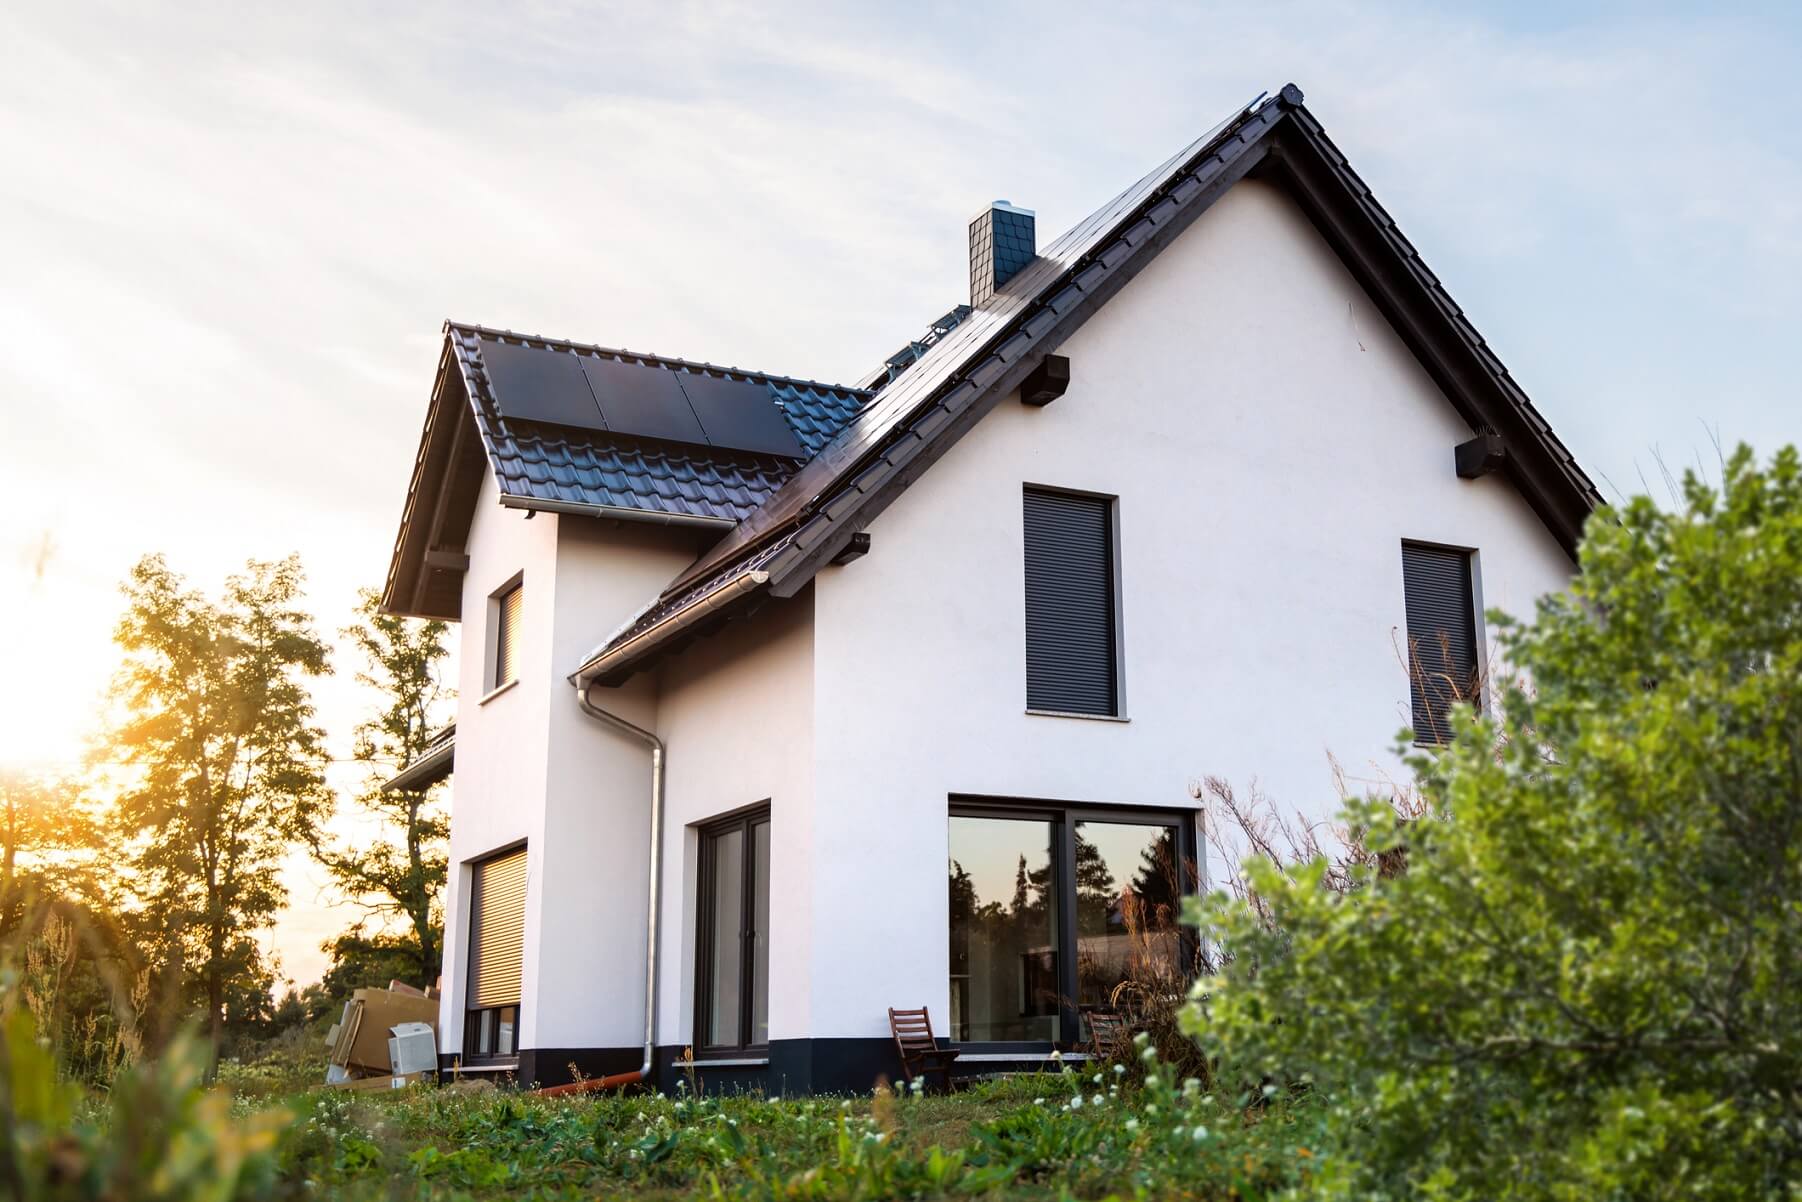 Außenansicht eines neu gebauten Einfamilienhauses in Deutschland. Das Haus ist mit Solarpanelen auf dem Dach ausgestattet und nach modernen Standards der Nachhaltigkeit gebaut.